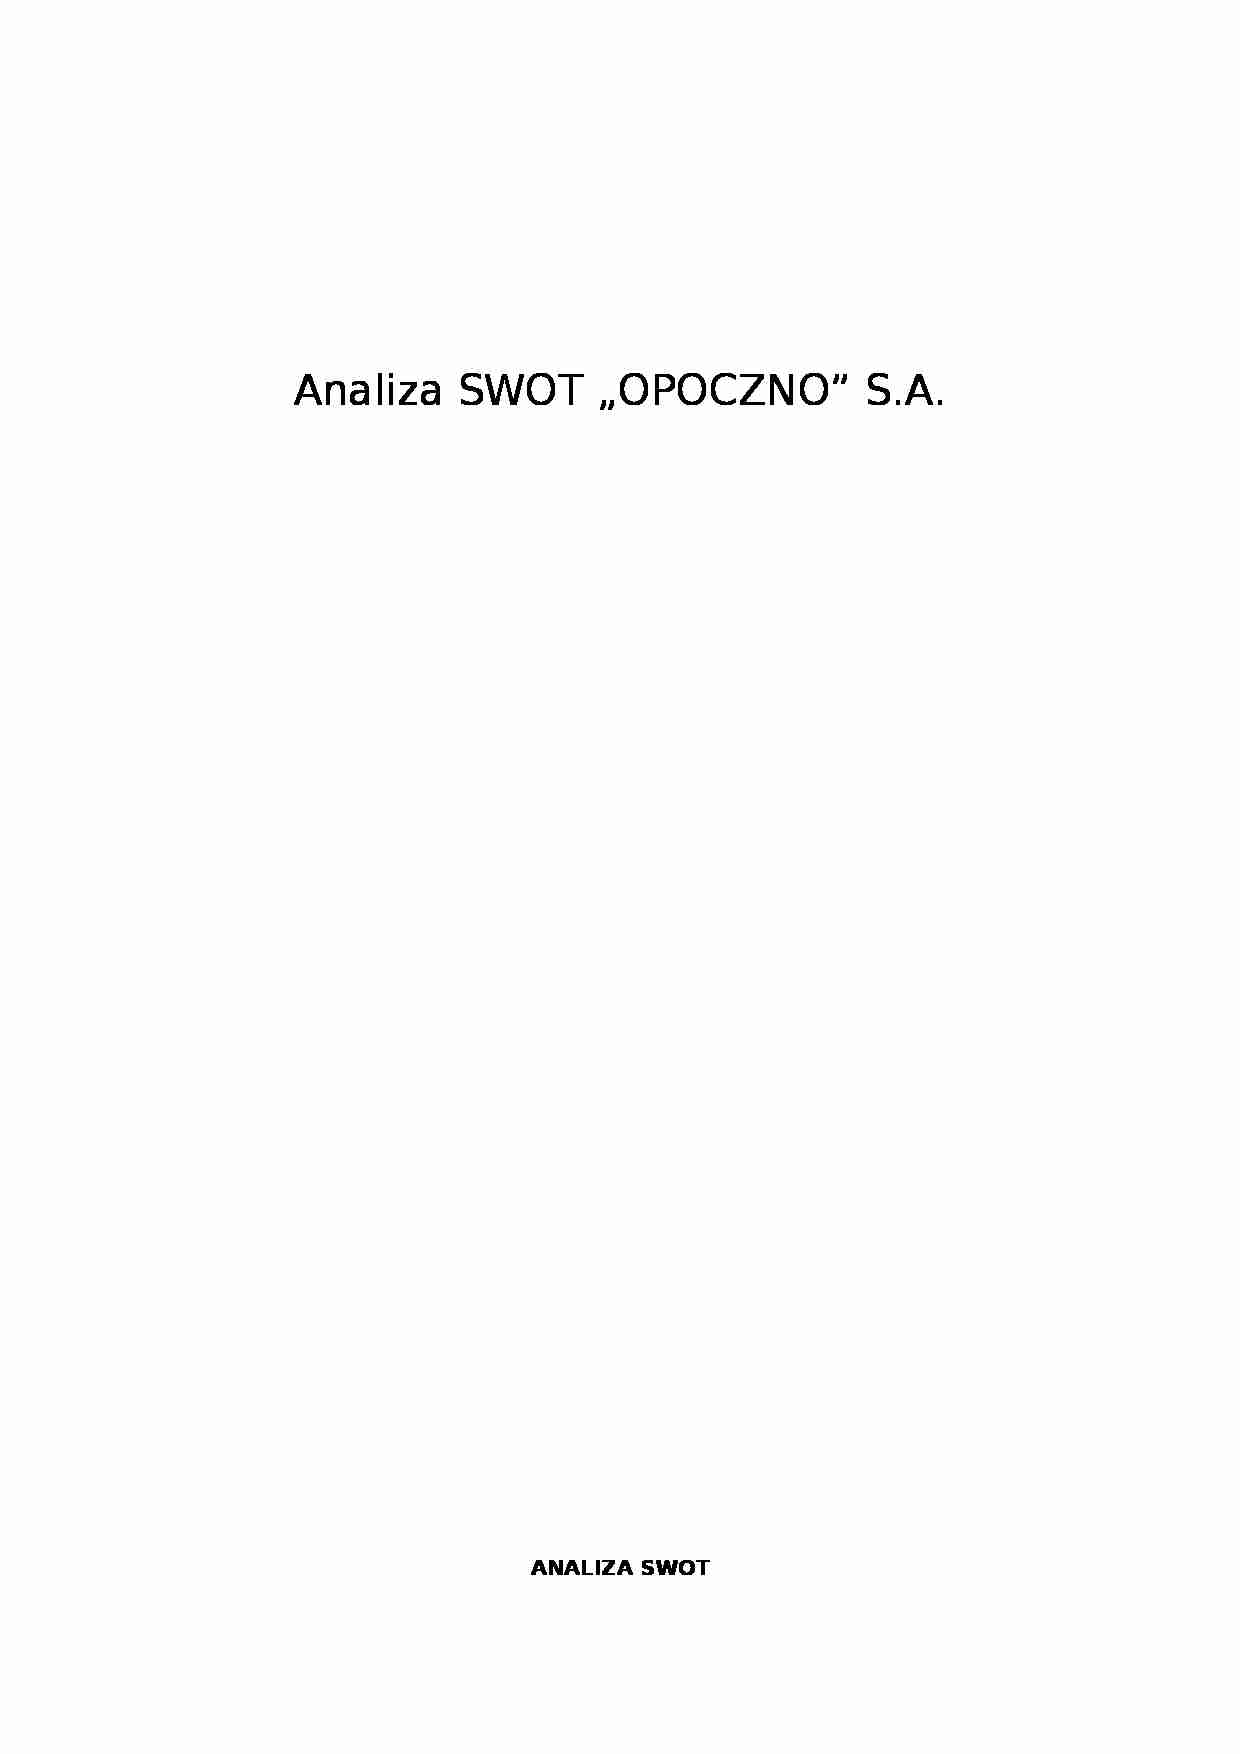 Analiza SWOT - Opoczno SA - Profil konkurencyjny - strona 1